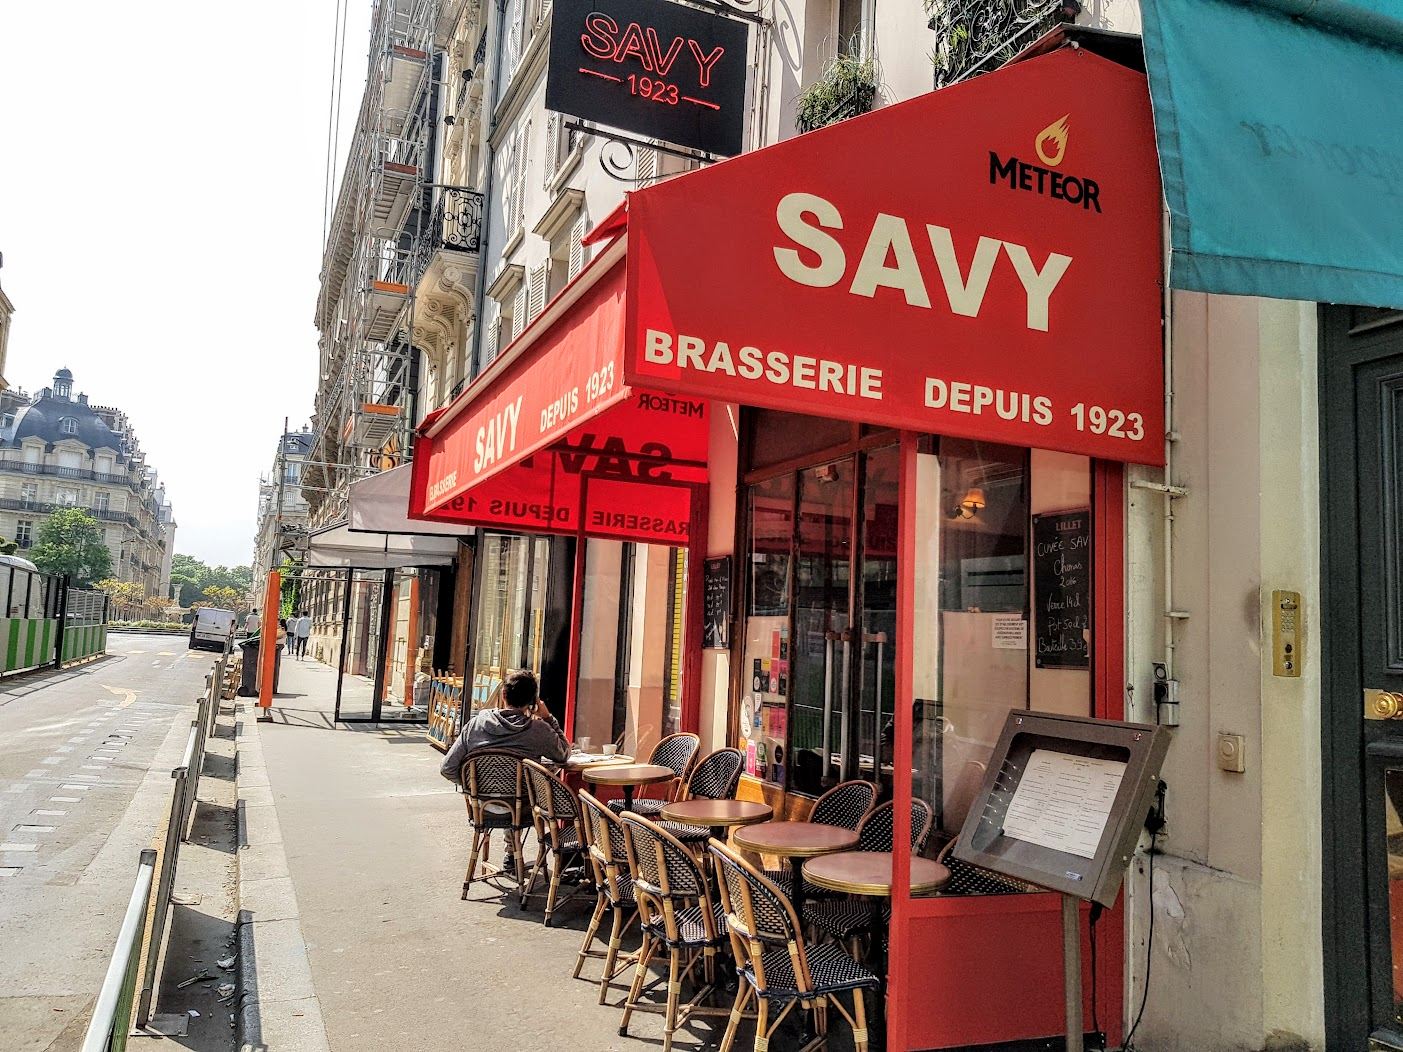 Savy (Chez)